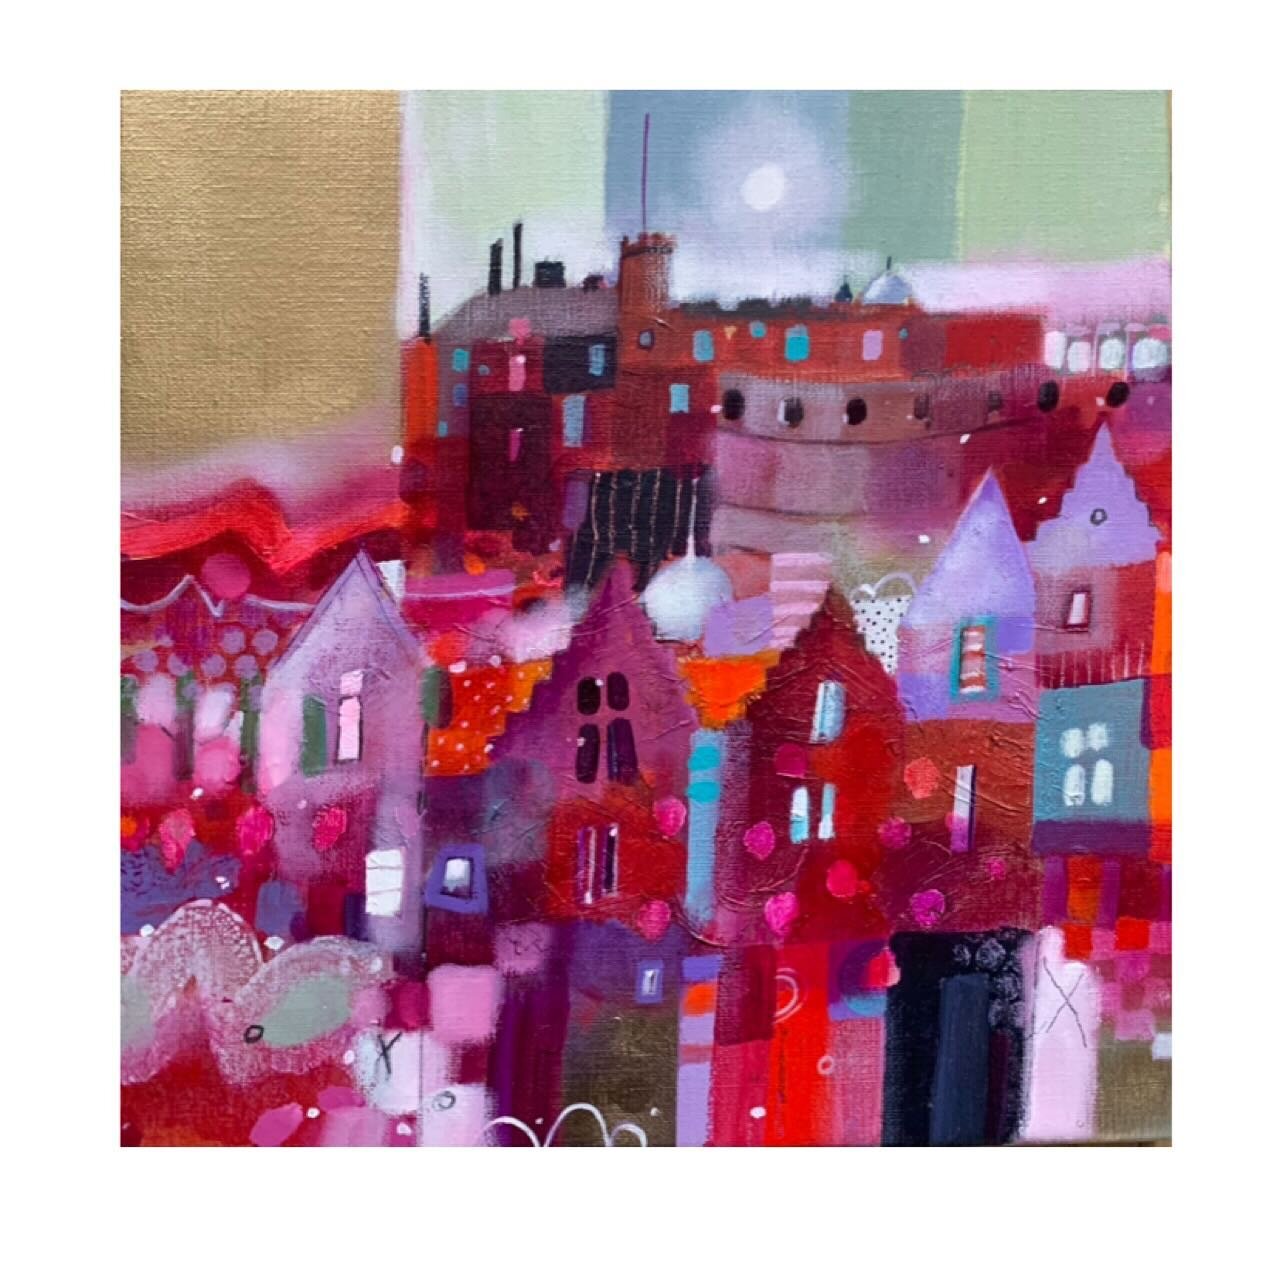 Edinburgh abstracts.
Enjoyed working on these this week. Edinburgh Castle and Victoria Street.
Both 15&rdquo; image size, framed size approximately 23&rdquo; 
www.emmasdavisartist.co.uk
.
.
.
#emmasdavisartist #emmadavisart #scottishart #edinburgh #c